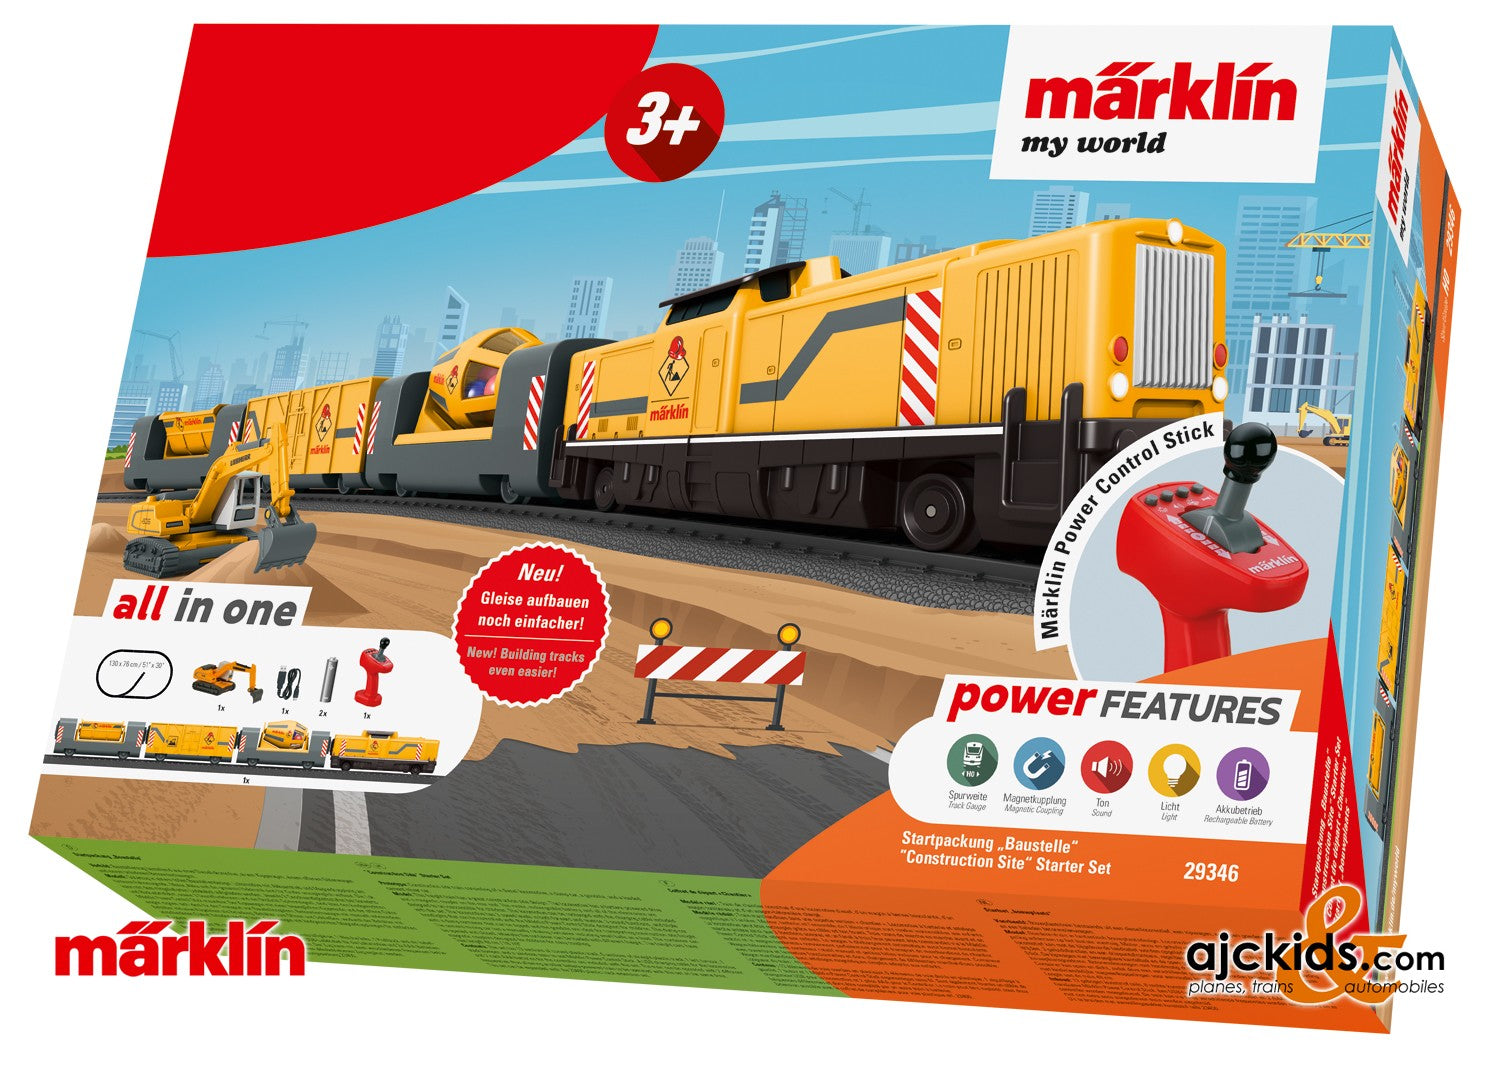 Marklin 29346 - Märklin my world – "Construction Site" Starter Set, EAN 4001883293462 at Ajckids.com